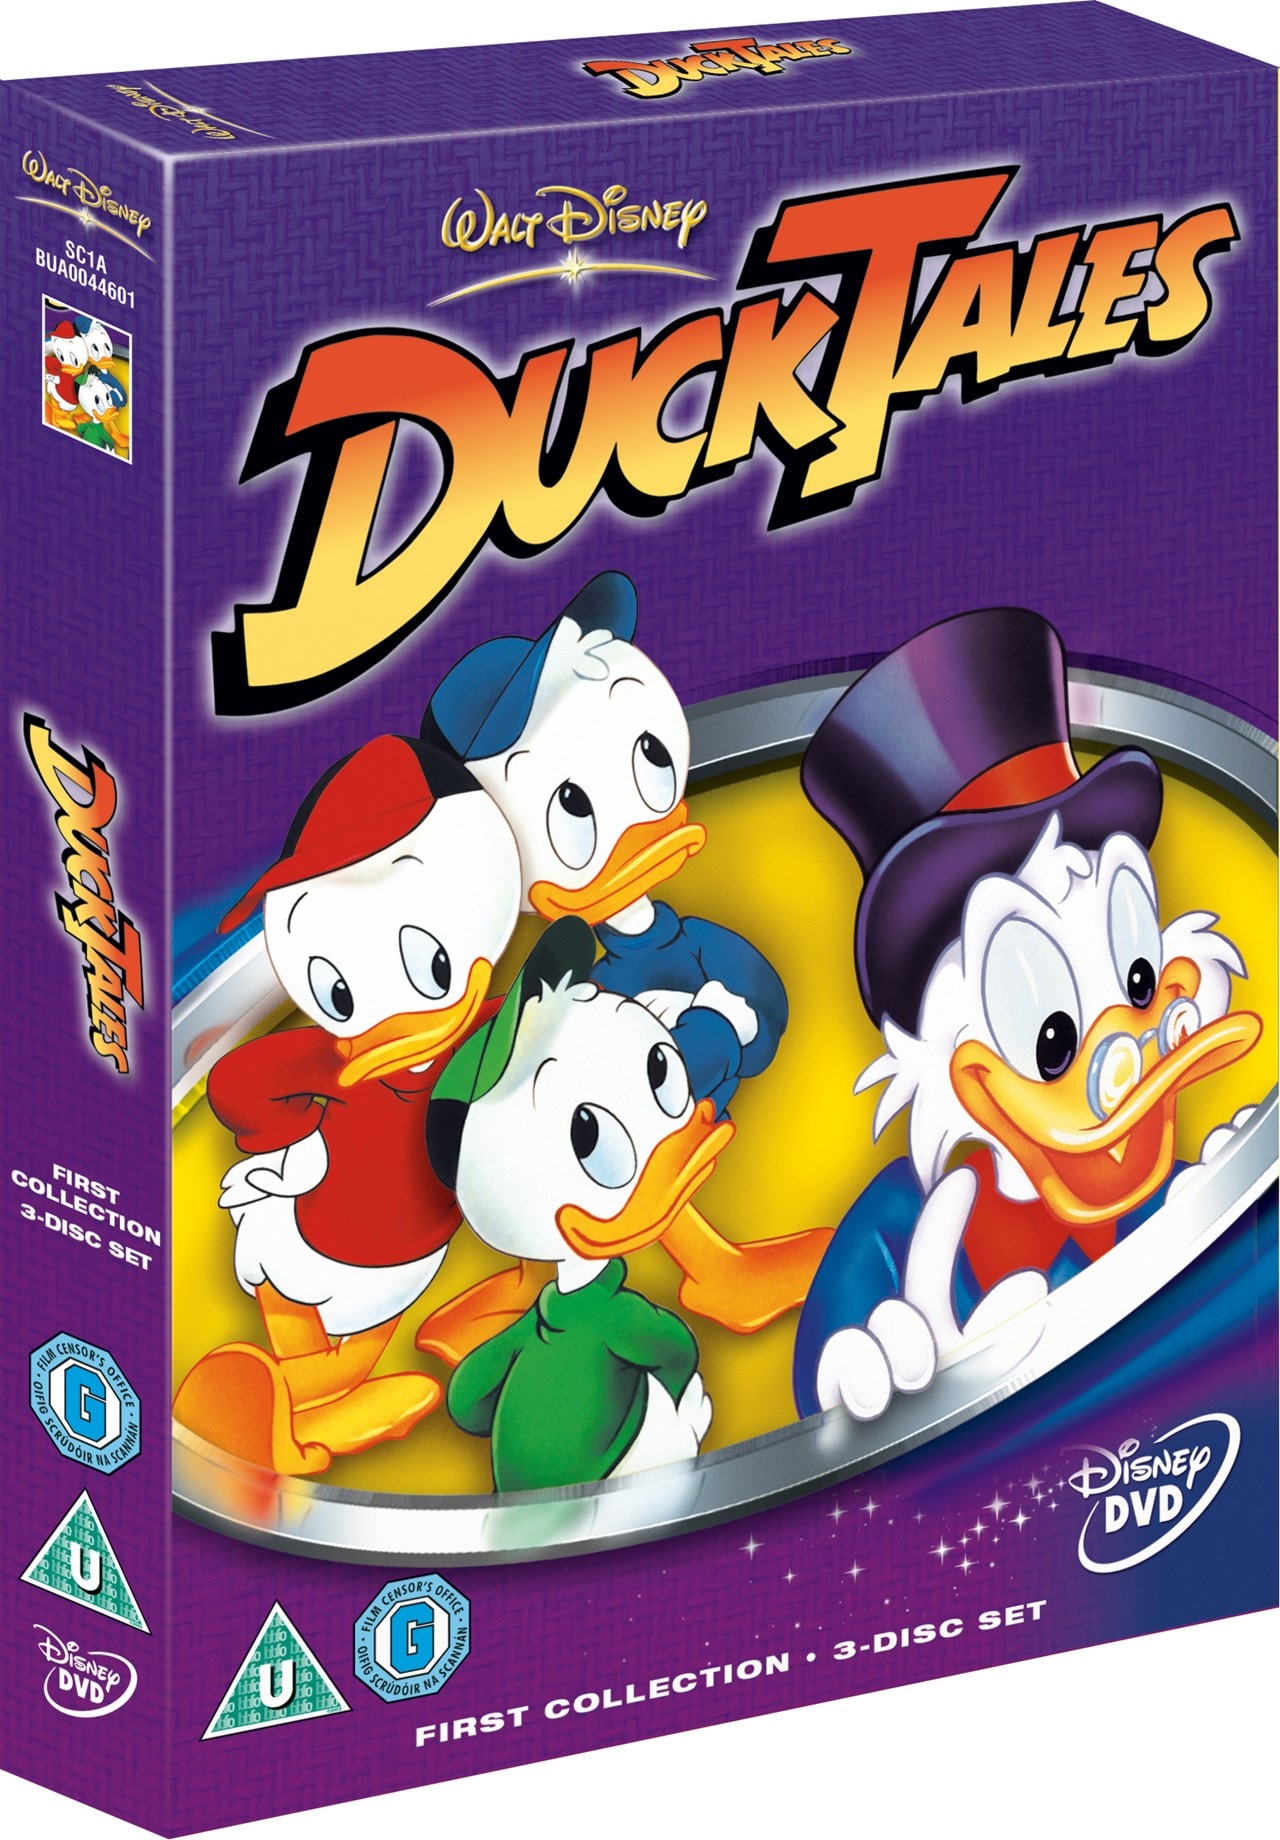 Ducktales: Series 1 - 2 